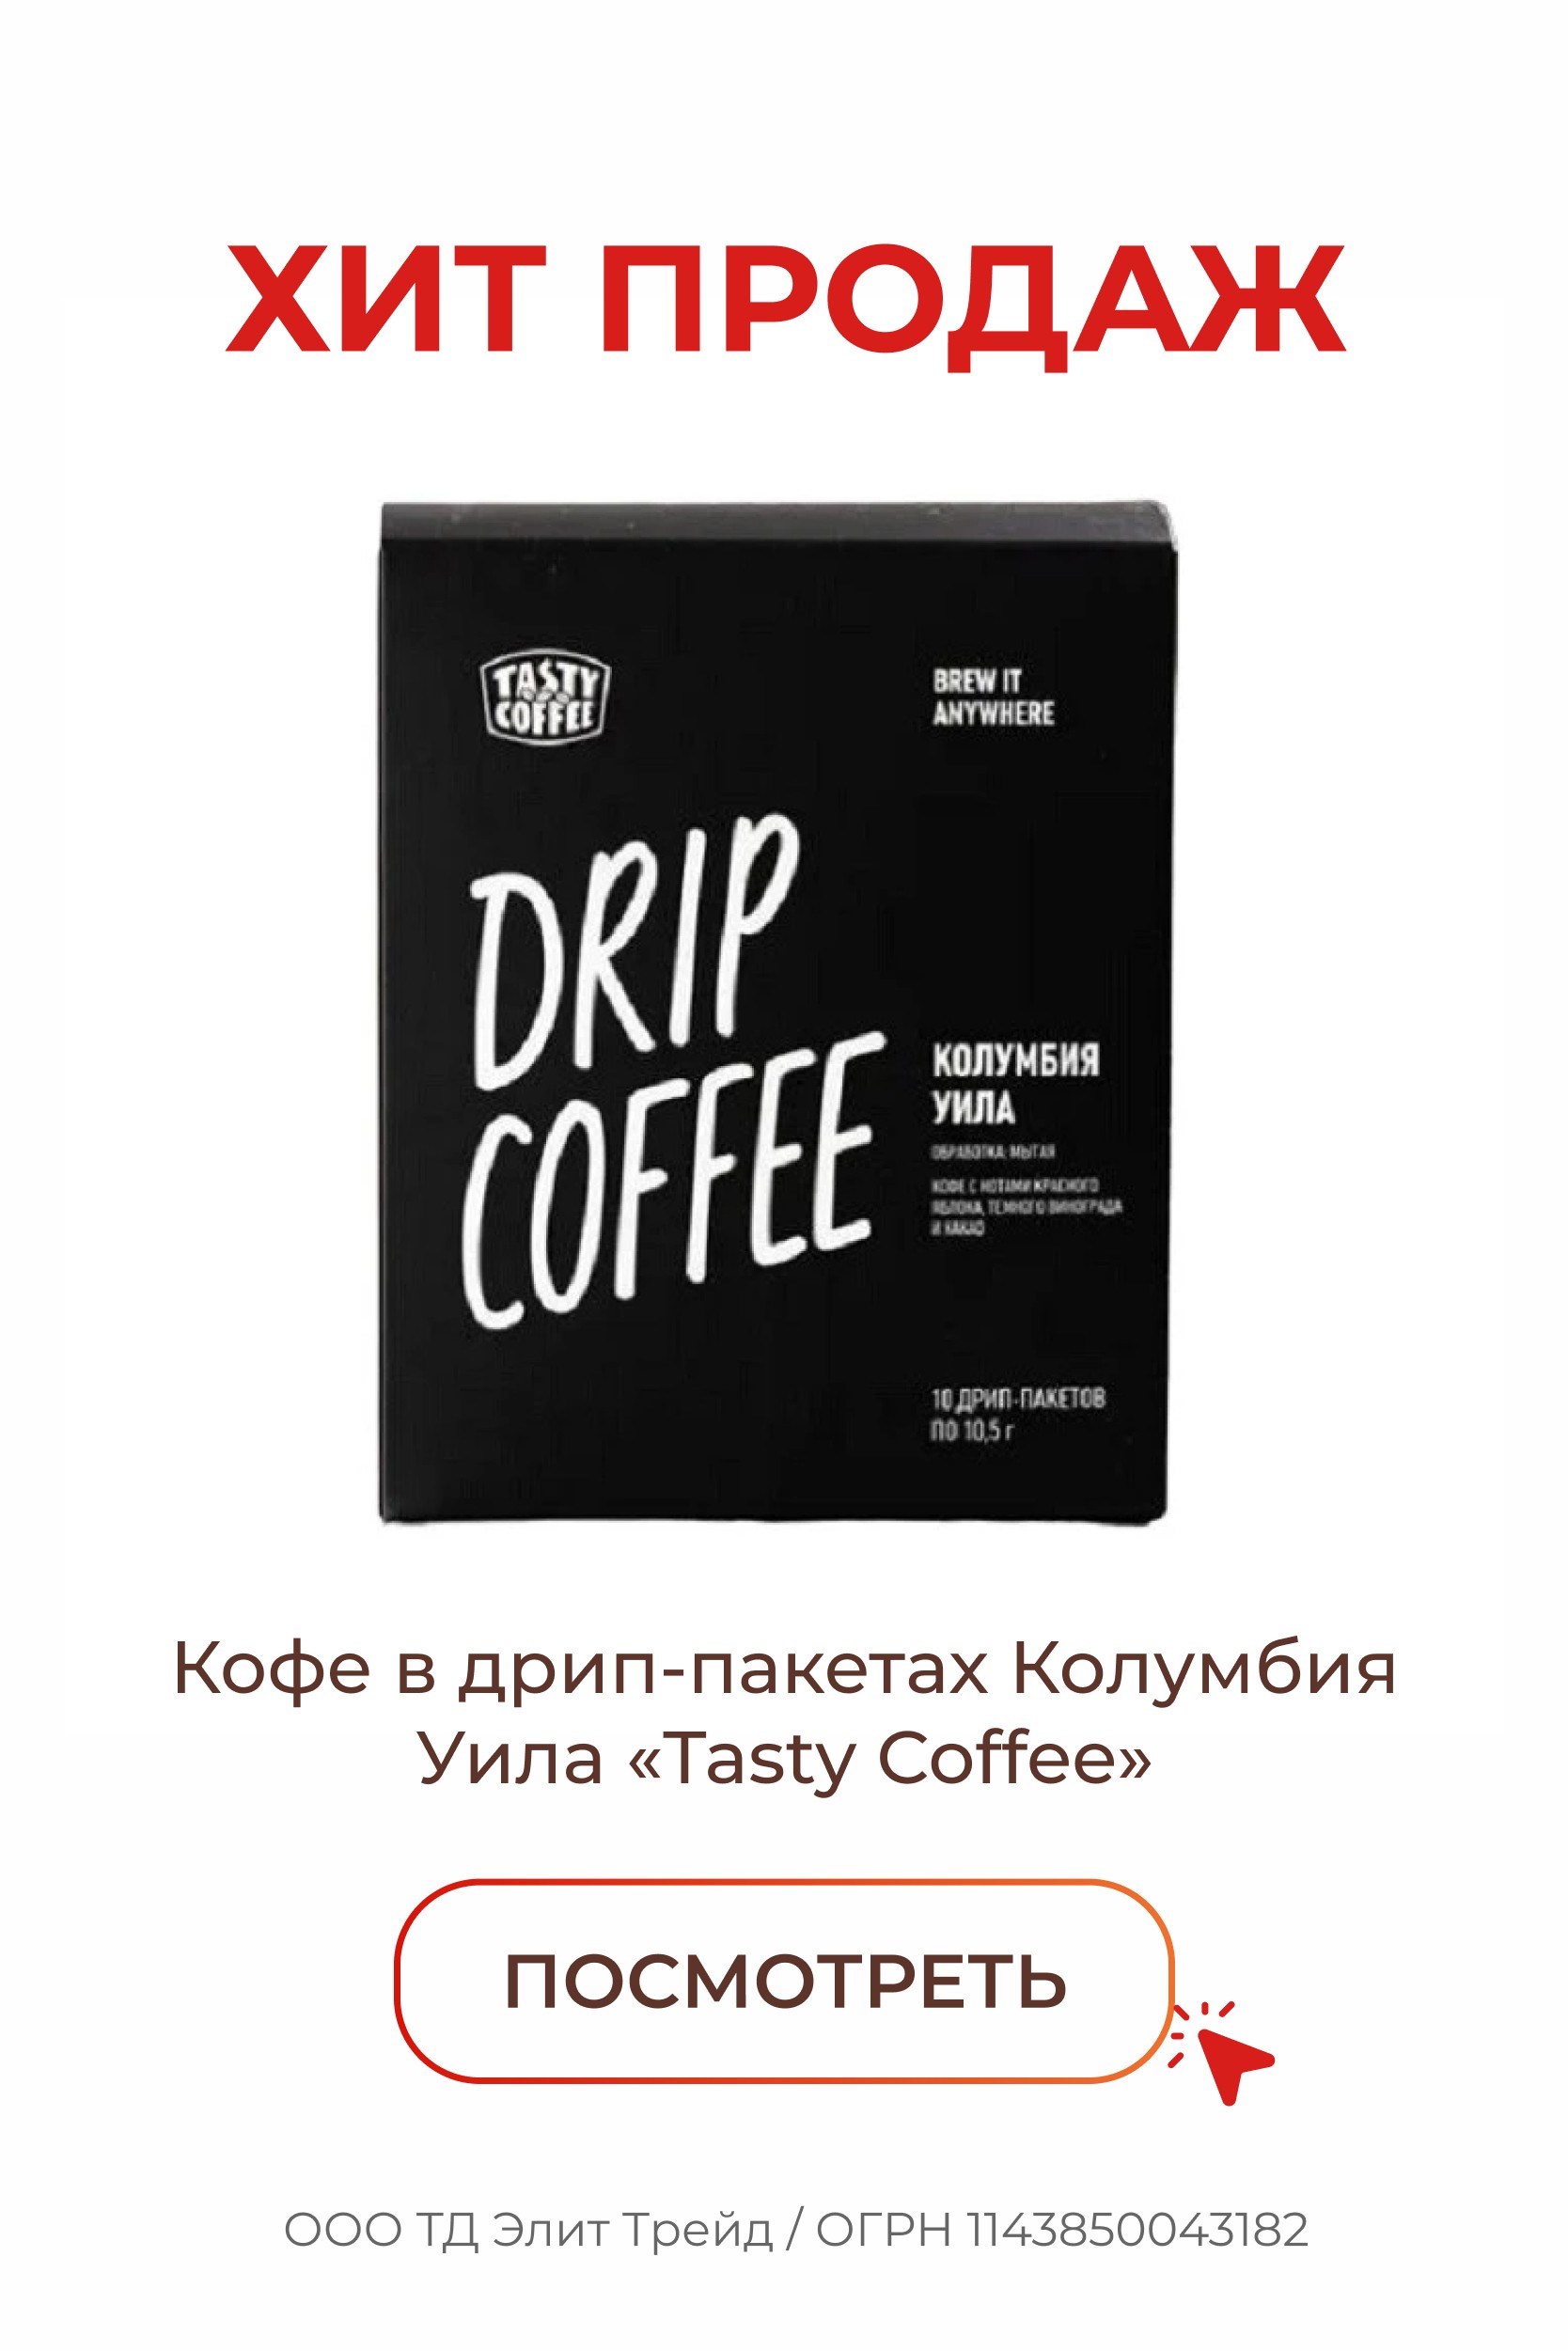 (Кондитерские изделия) Кофе Дрип пакеты